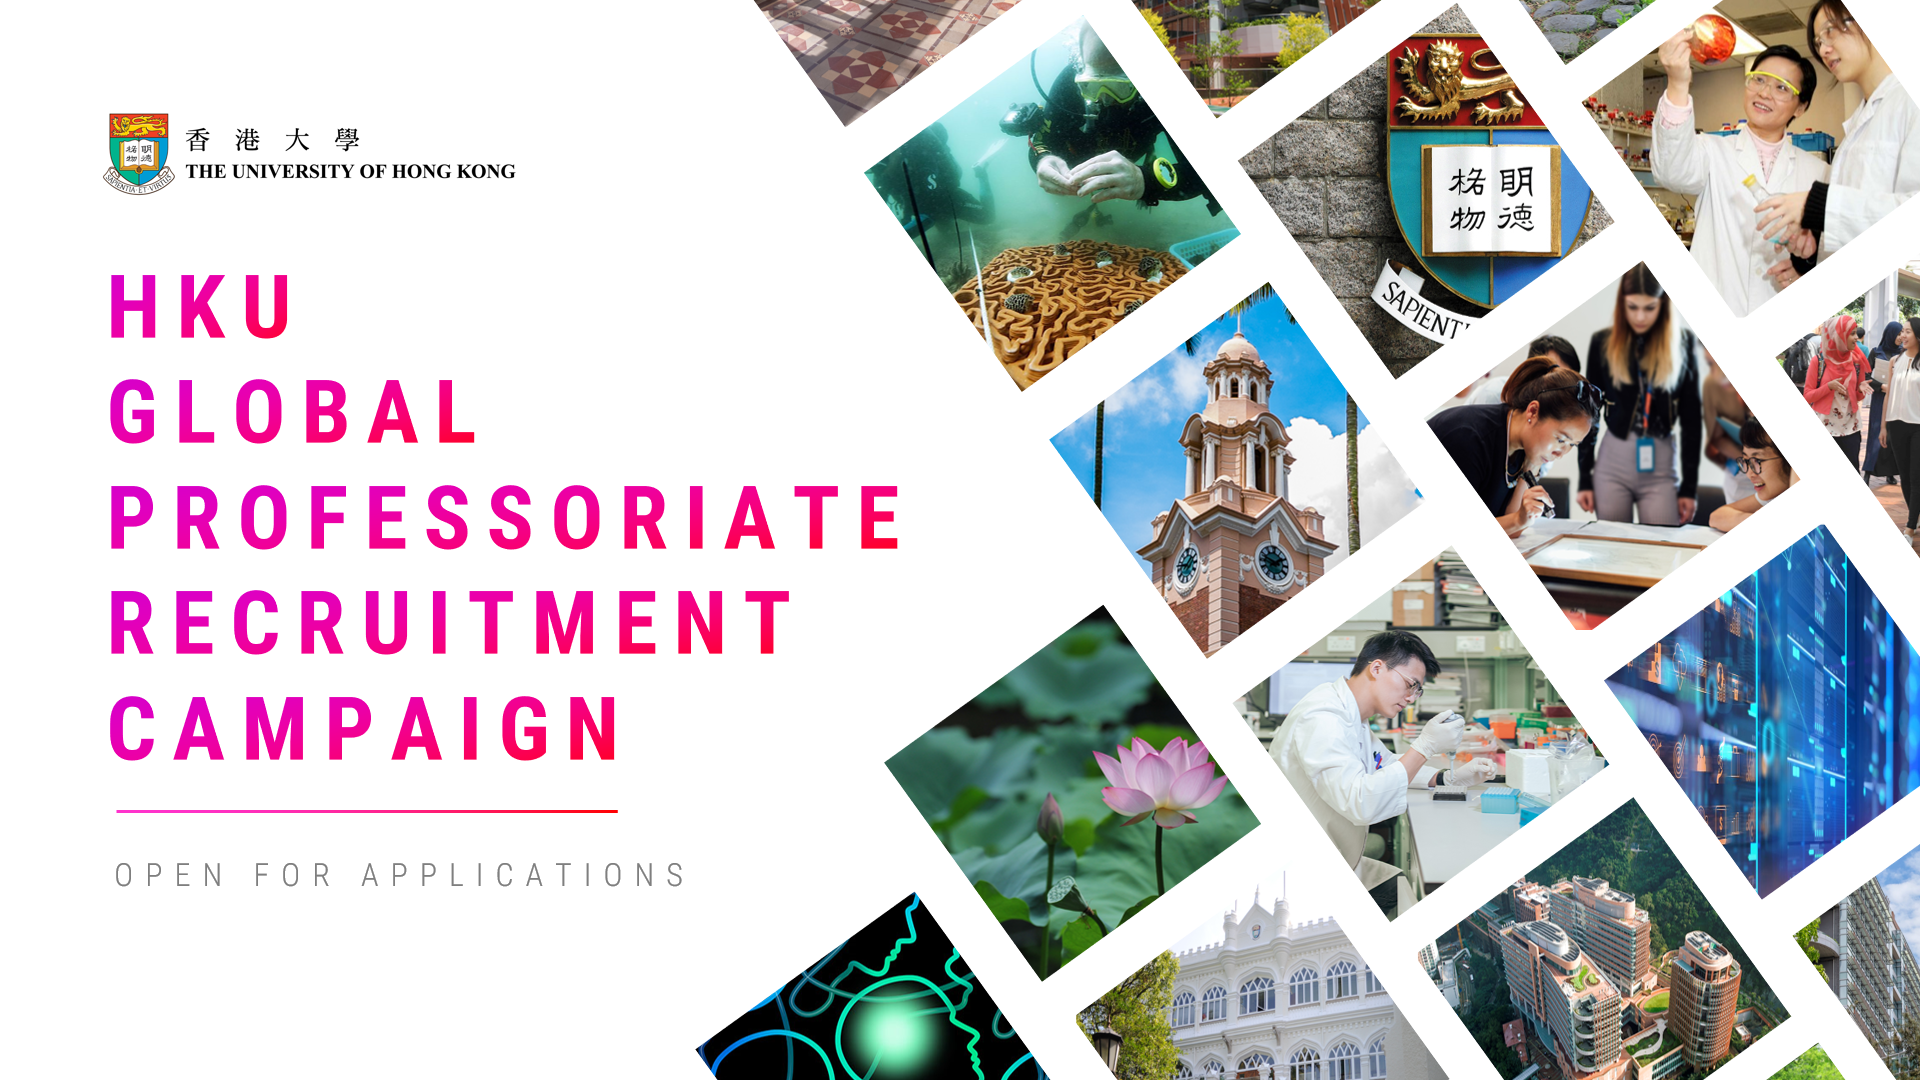 HKU Global Professoriate Recruitment Campaign